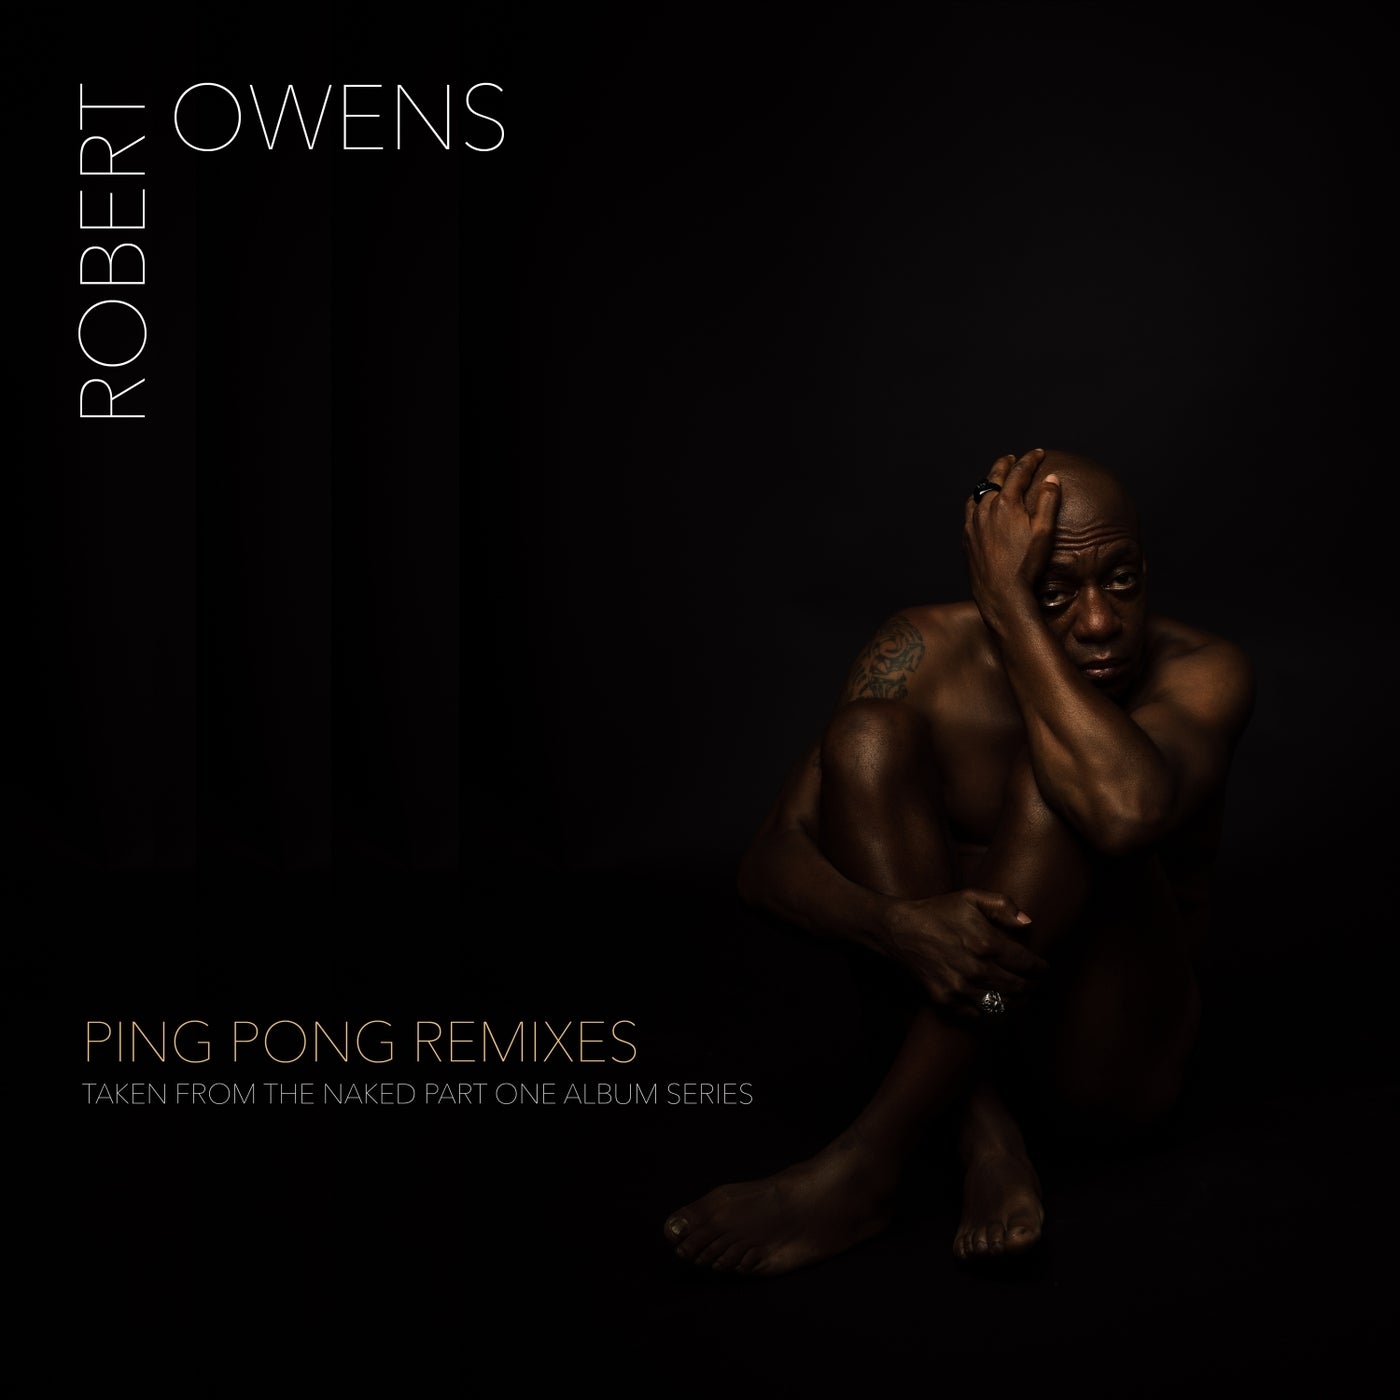 Ping Pong Remixes